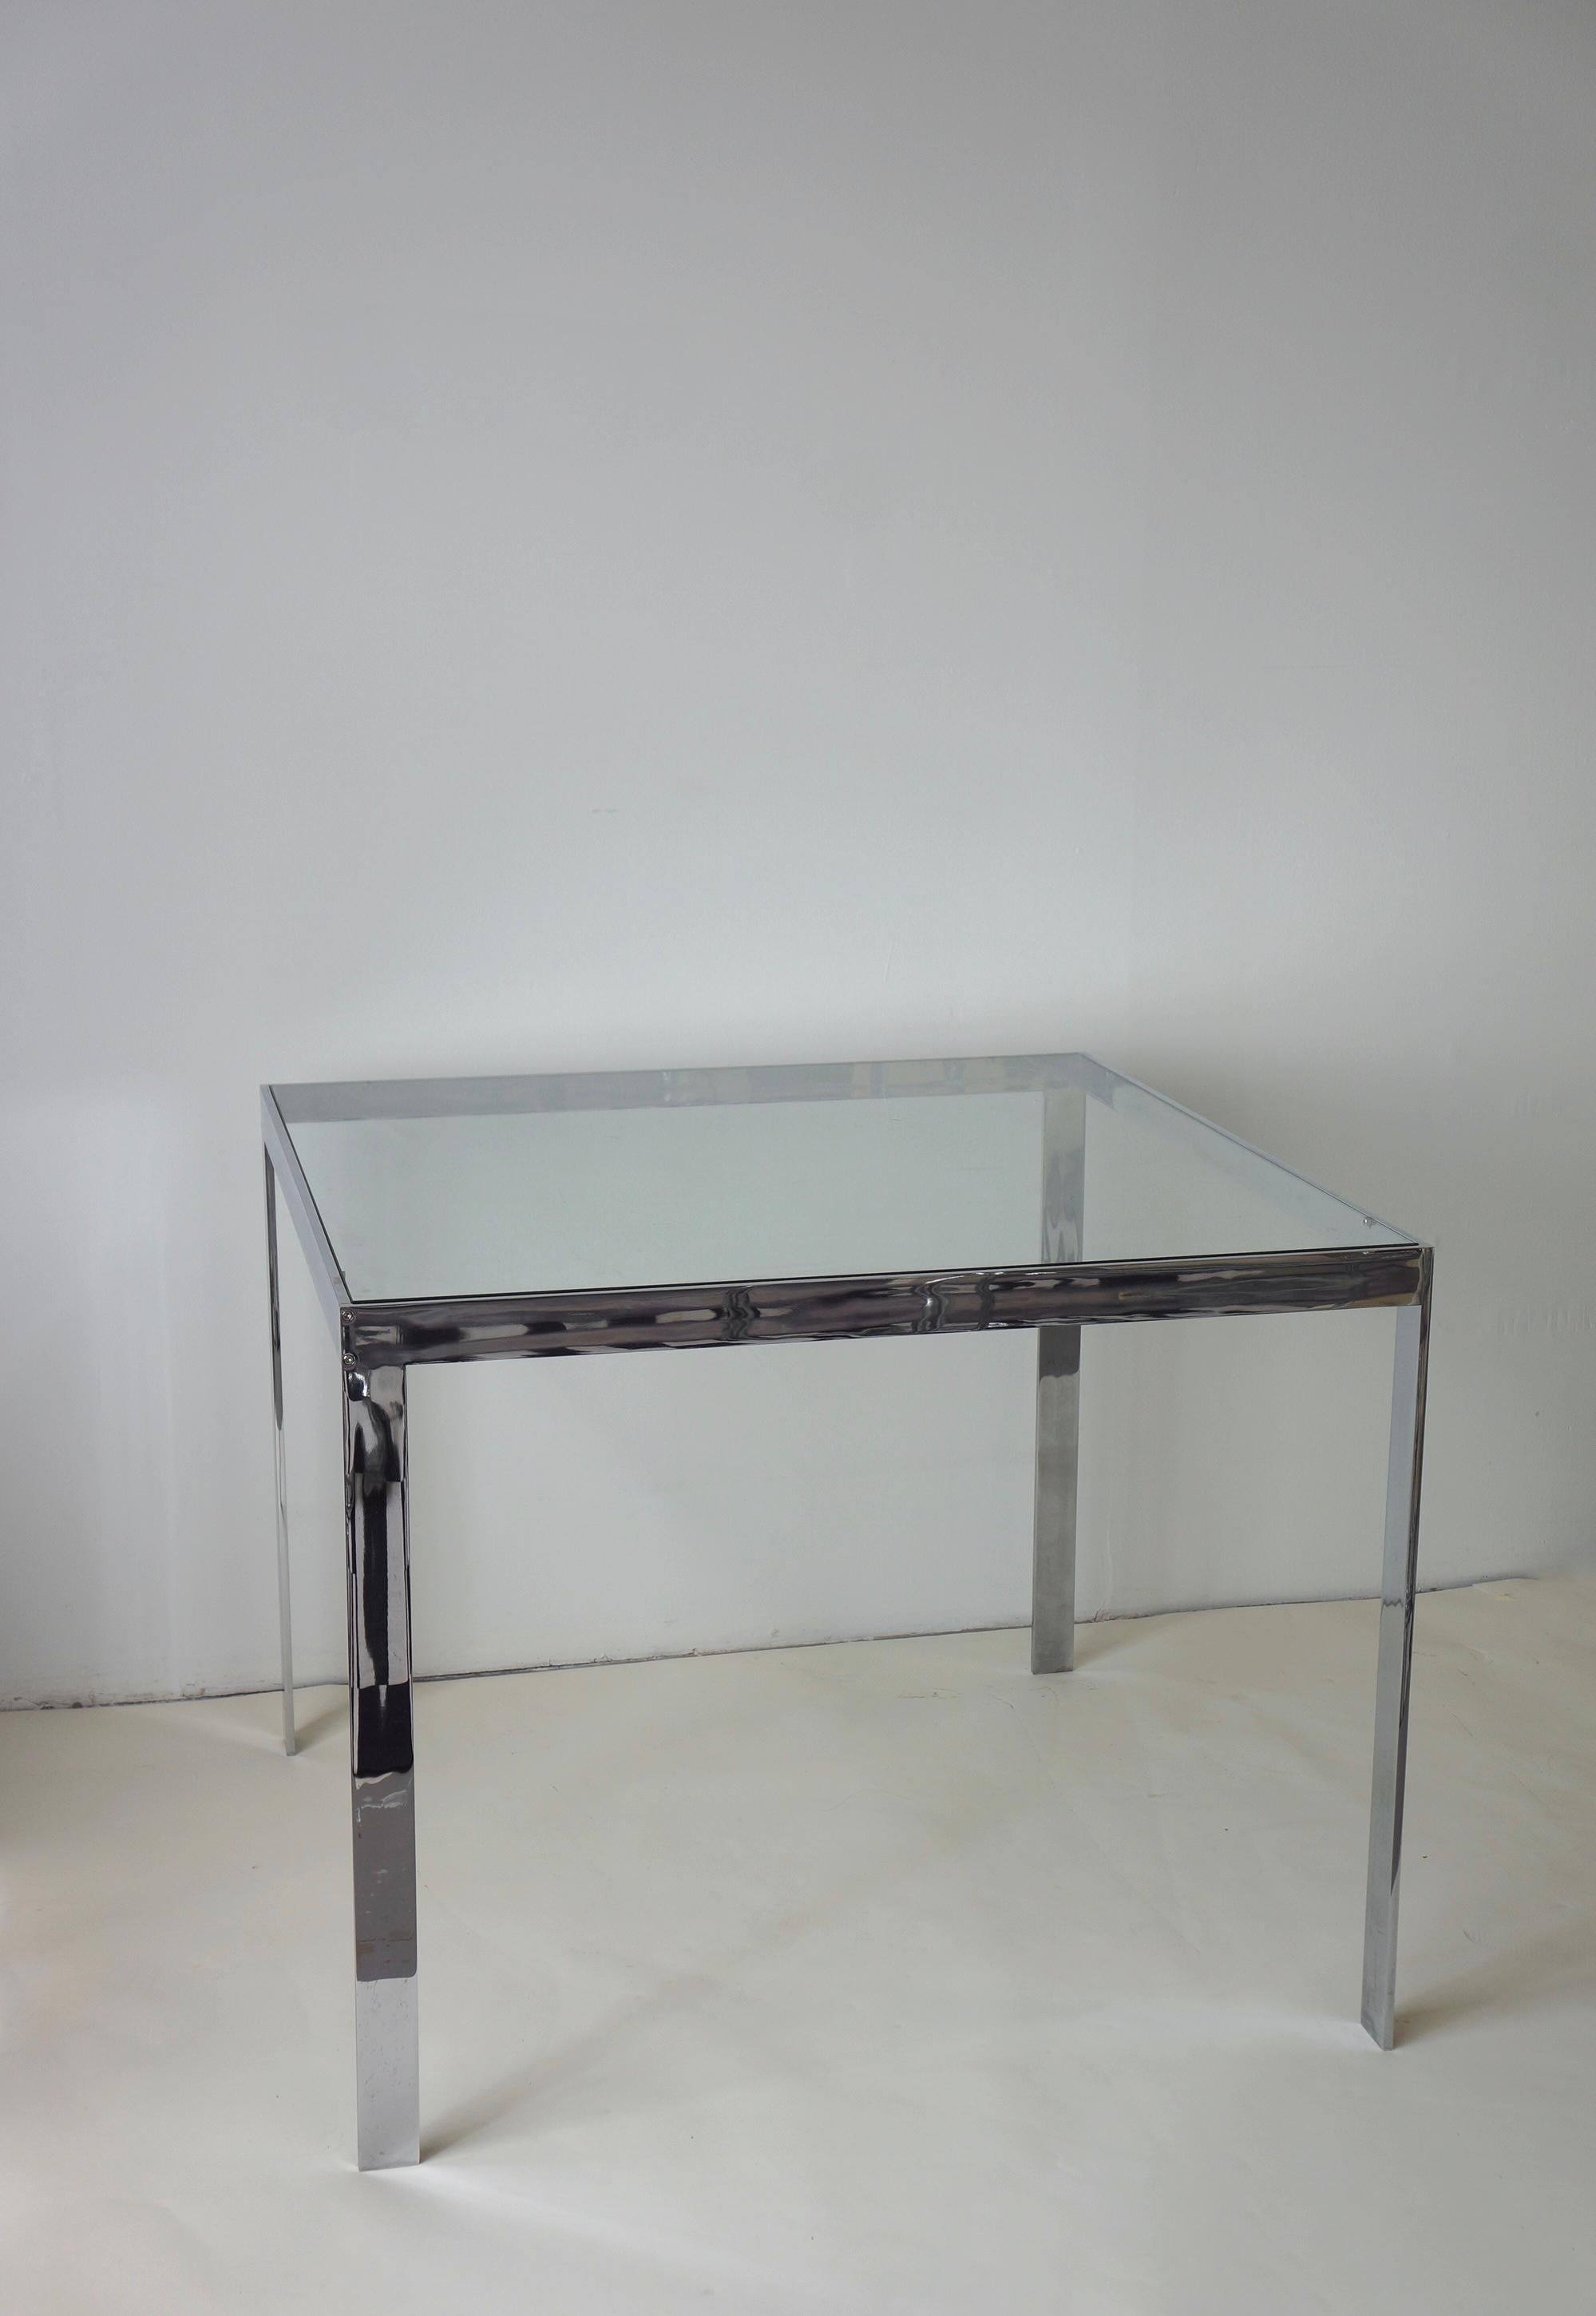 Elegante table de salle à manger carrée en verre et chrome. Il a été fabriqué dans les années 1970. Cette pièce minimale s'inscrit dans la lignée du design de l'époque. Le corps chromé solide et raffiné est construit de manière transparente. Les